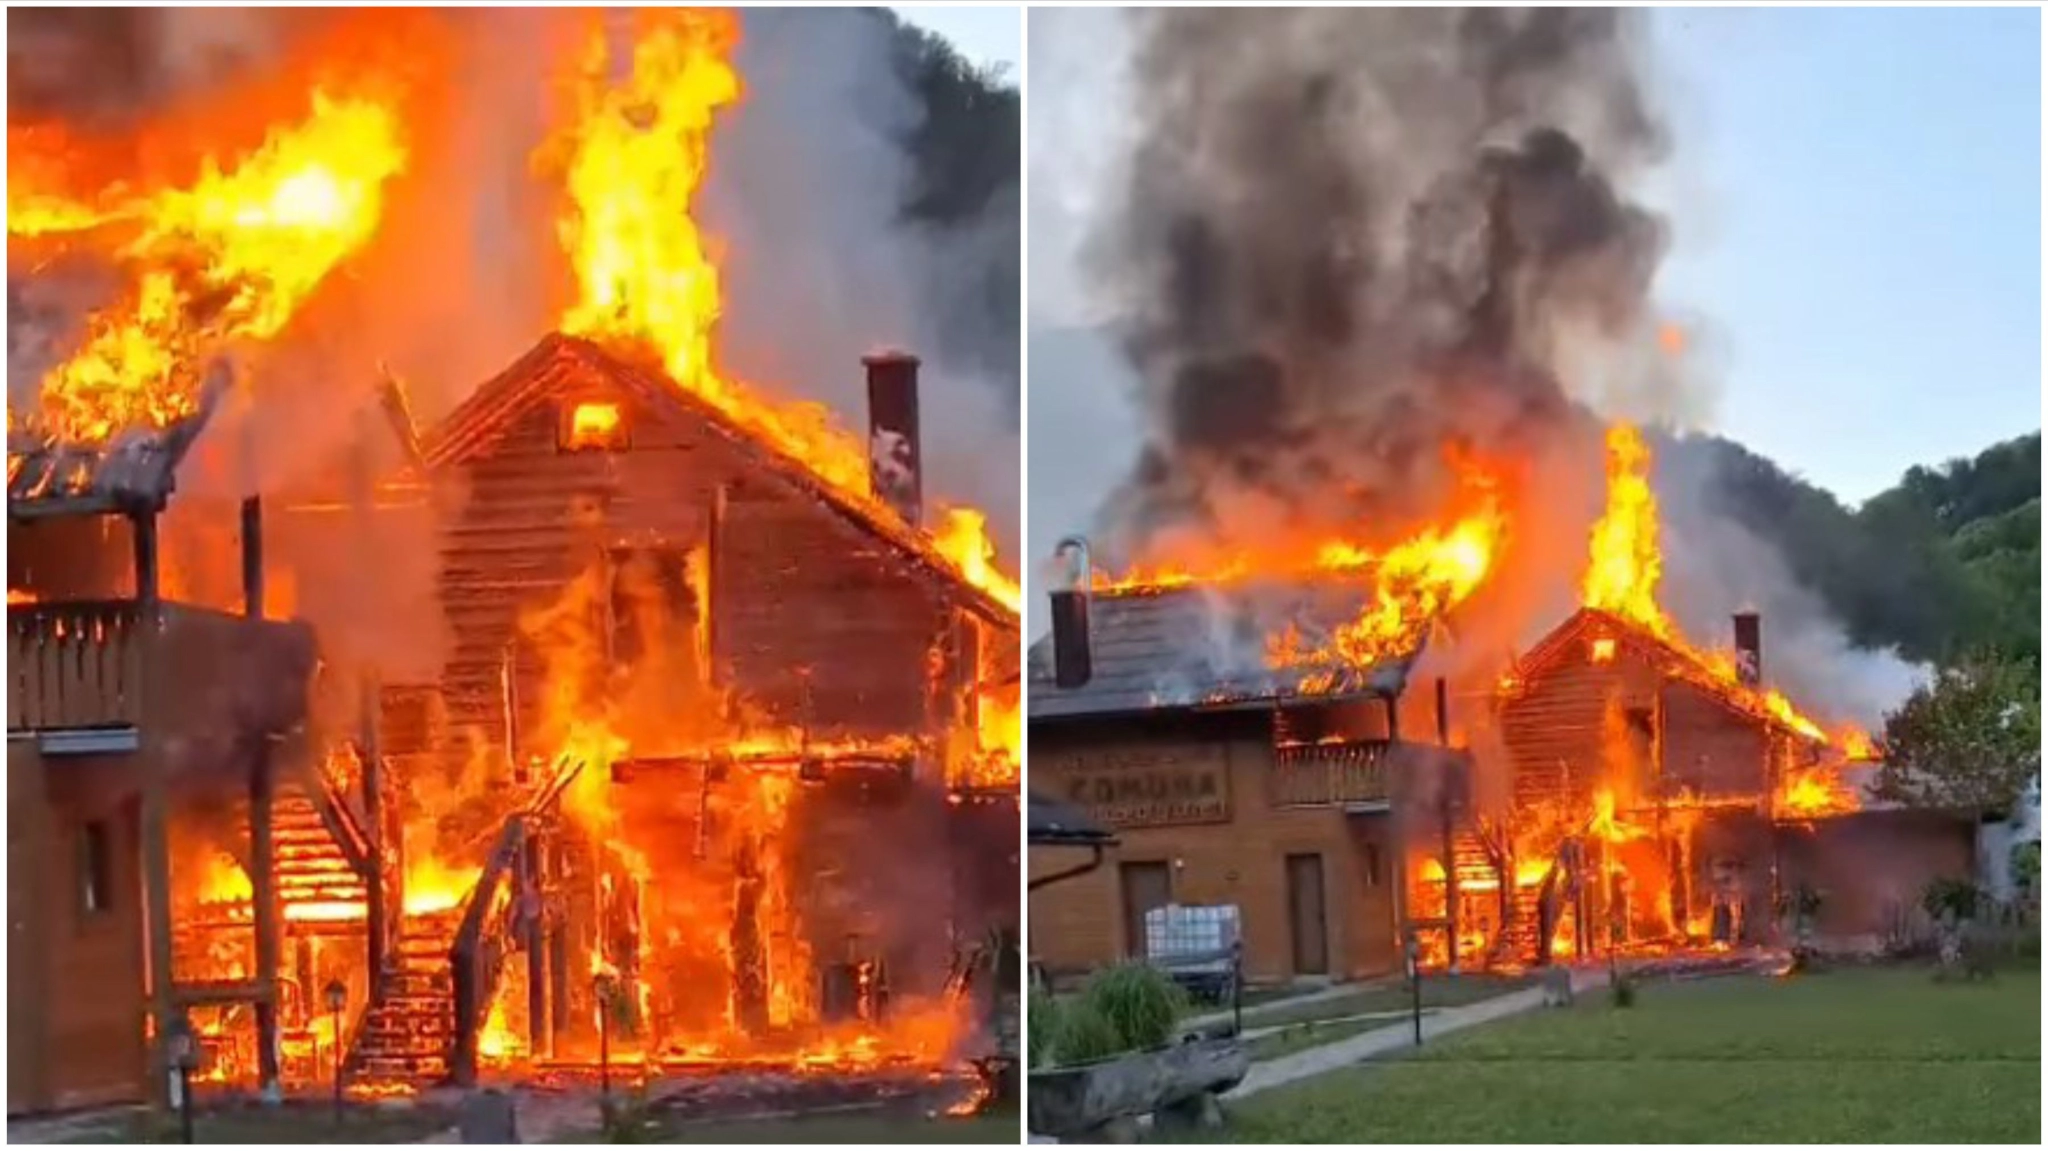 Pogledajte kako je vatra progutala poznati restoran u Ribniku